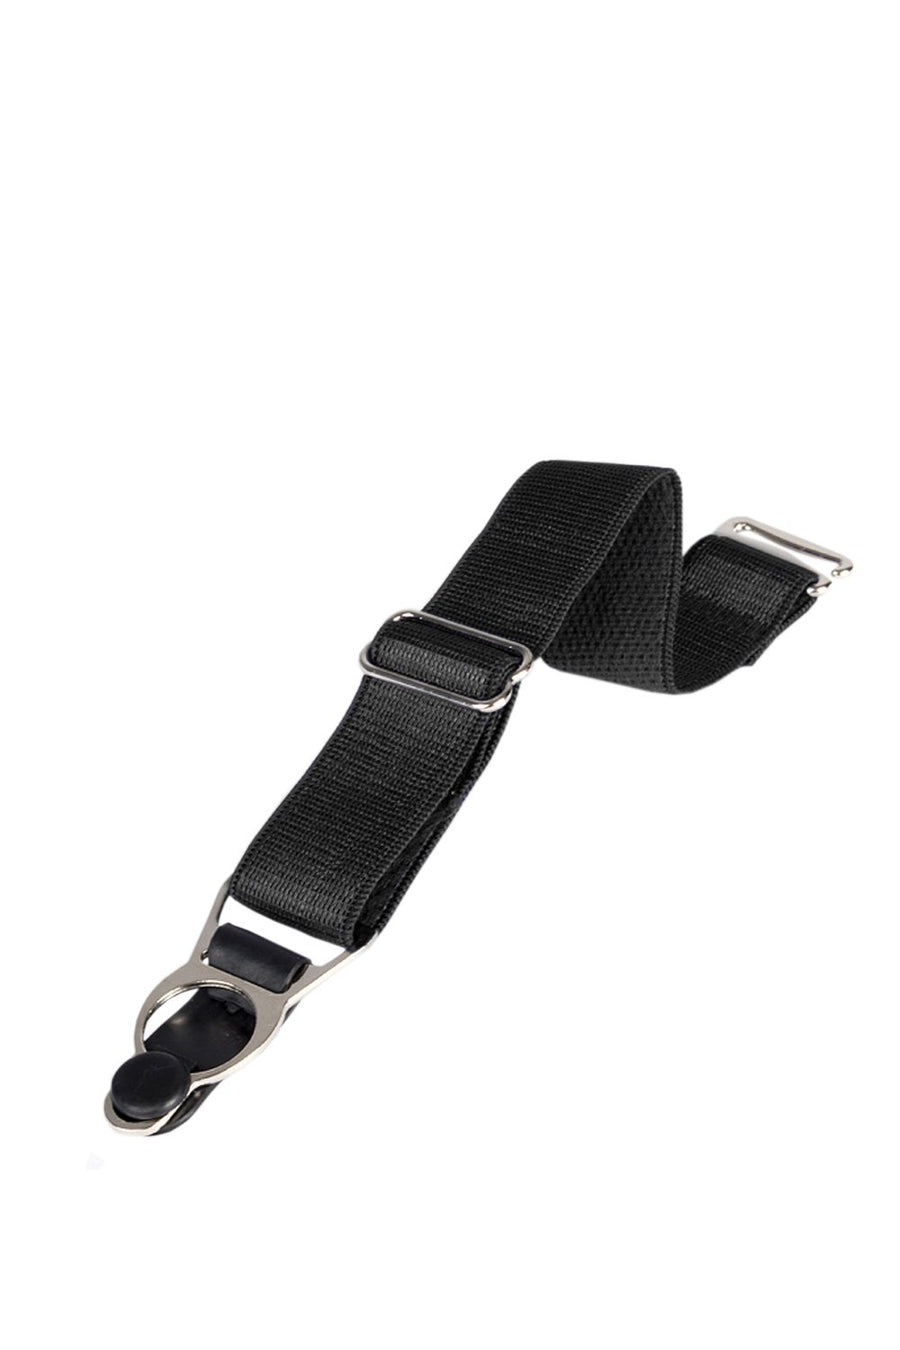 6 x Steel Suspender Clips In Black